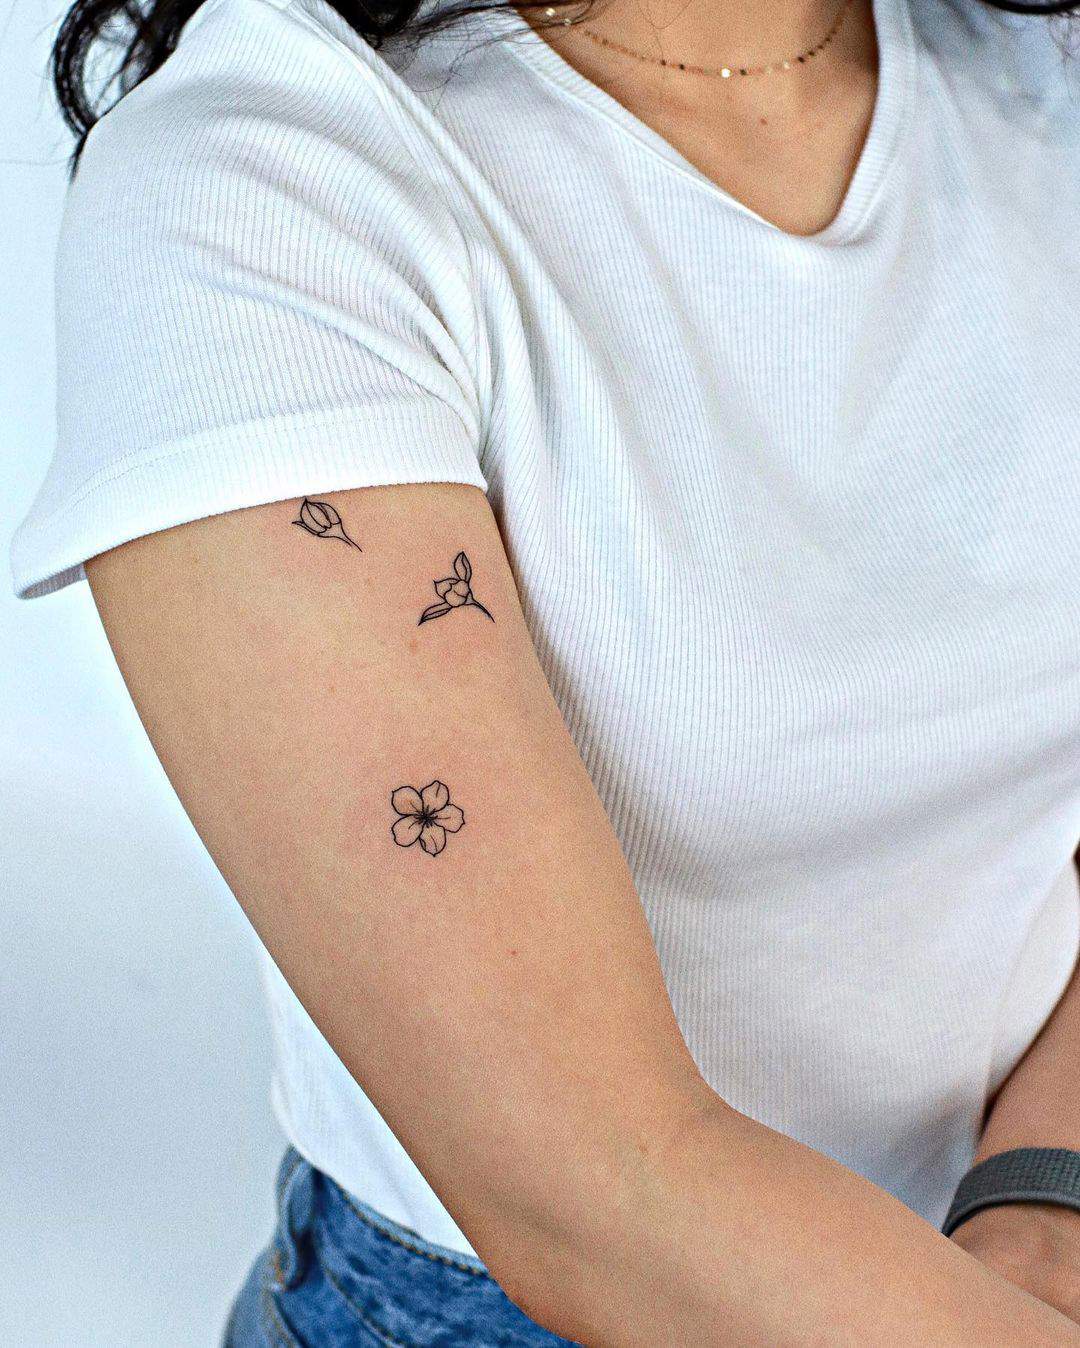 Tatuaje de flores sobre el brazo